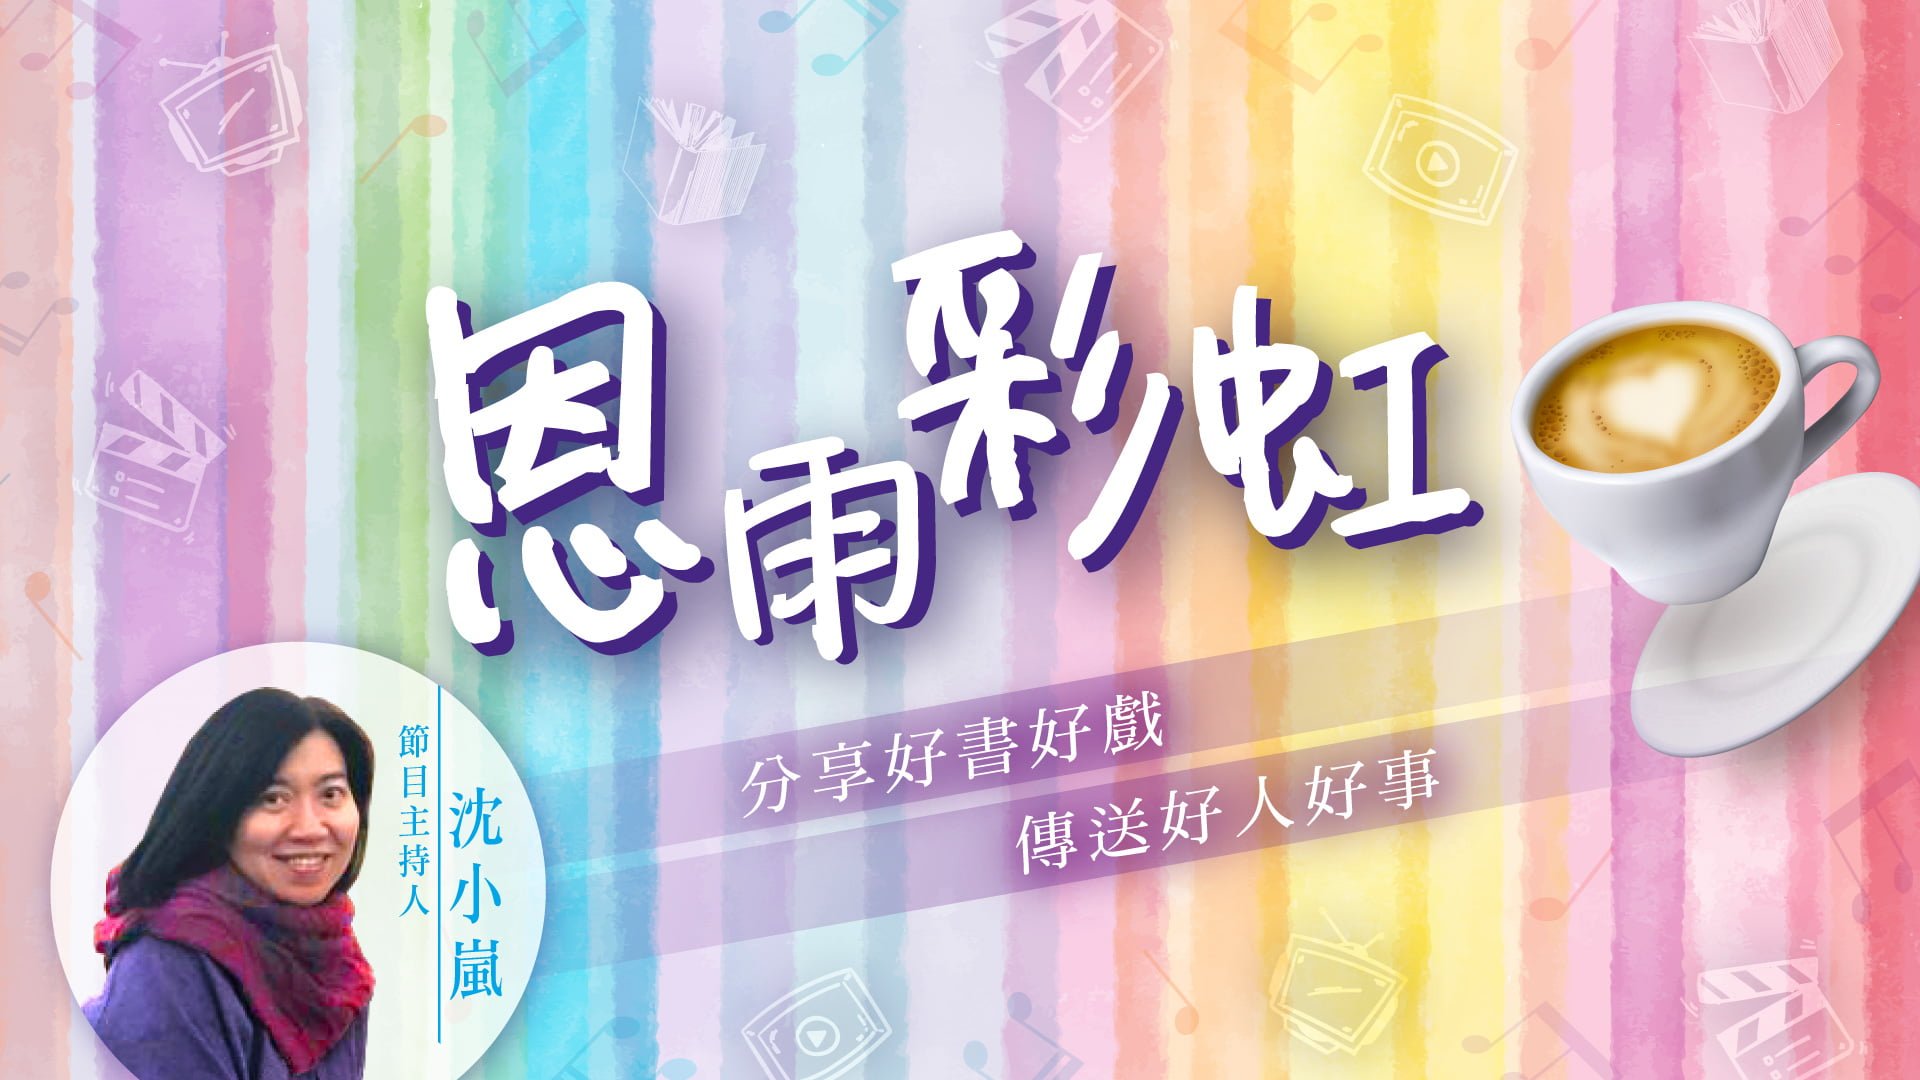 電台 恩雨彩虹 (2021SEP05)